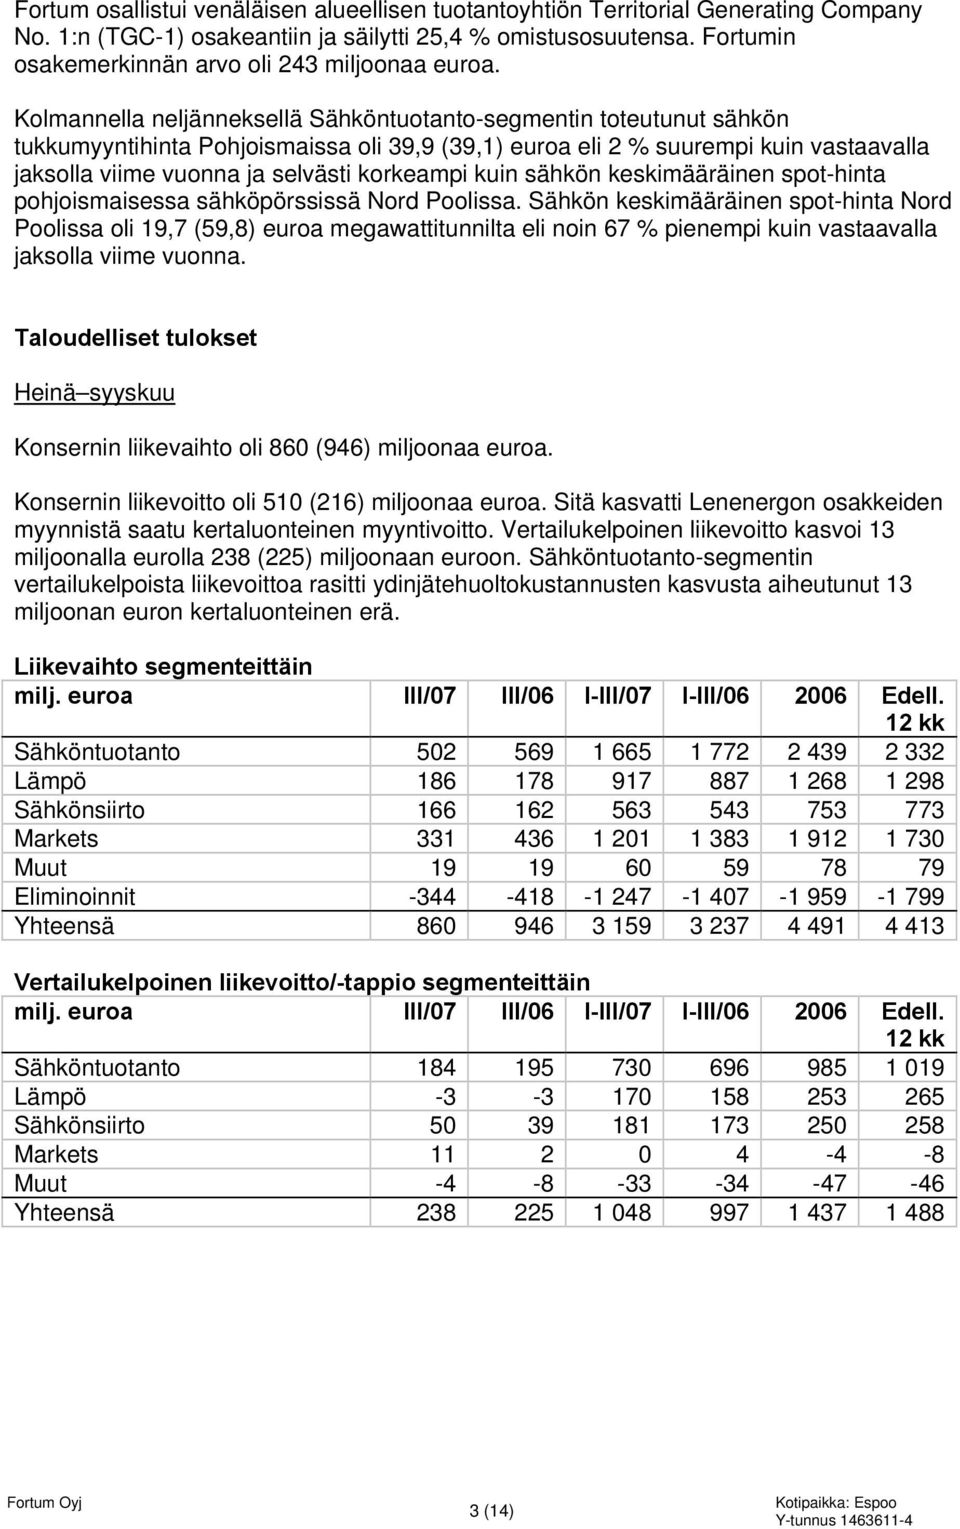 Kolmannella neljänneksellä Sähköntuotanto-segmentin toteutunut sähkön tukkumyyntihinta Pohjoismaissa oli 39,9 (39,1) euroa eli 2 % suurempi kuin vastaavalla jaksolla viime vuonna ja selvästi